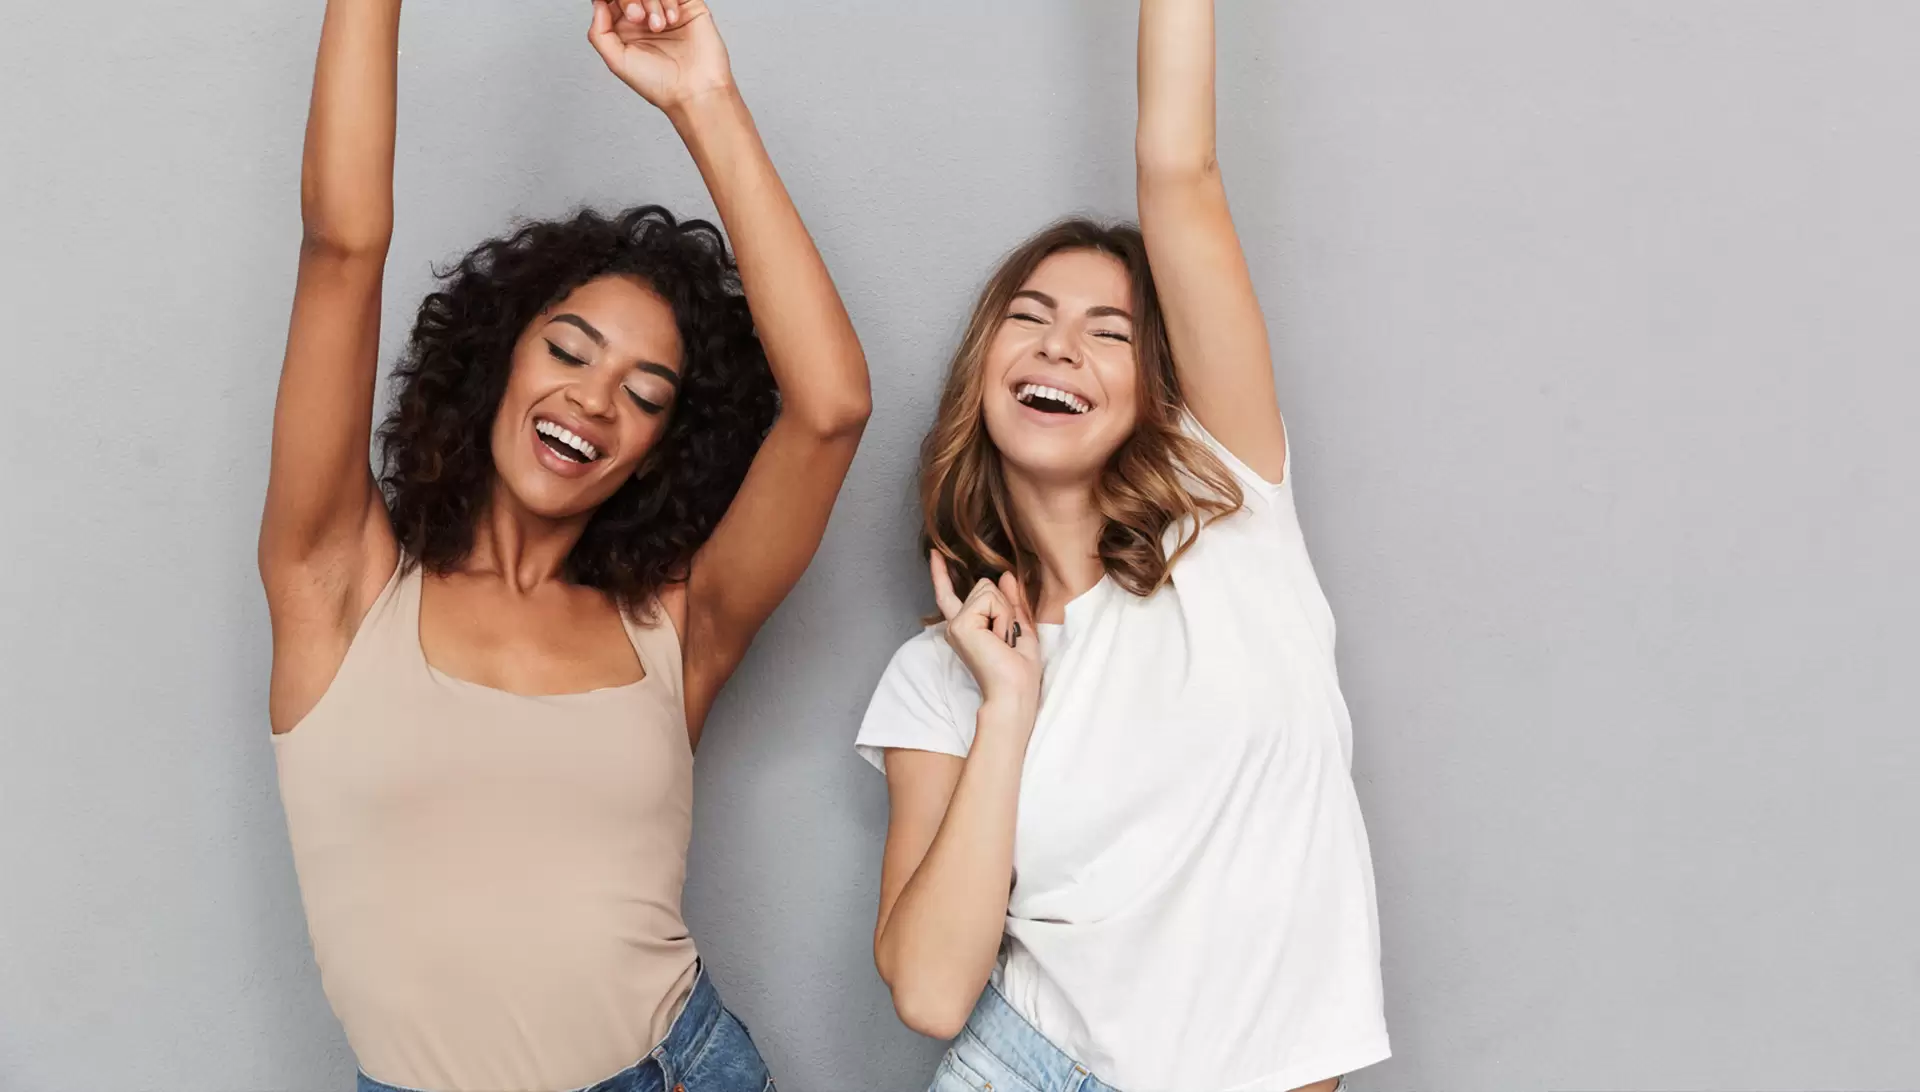 Women's Health: Two women happy